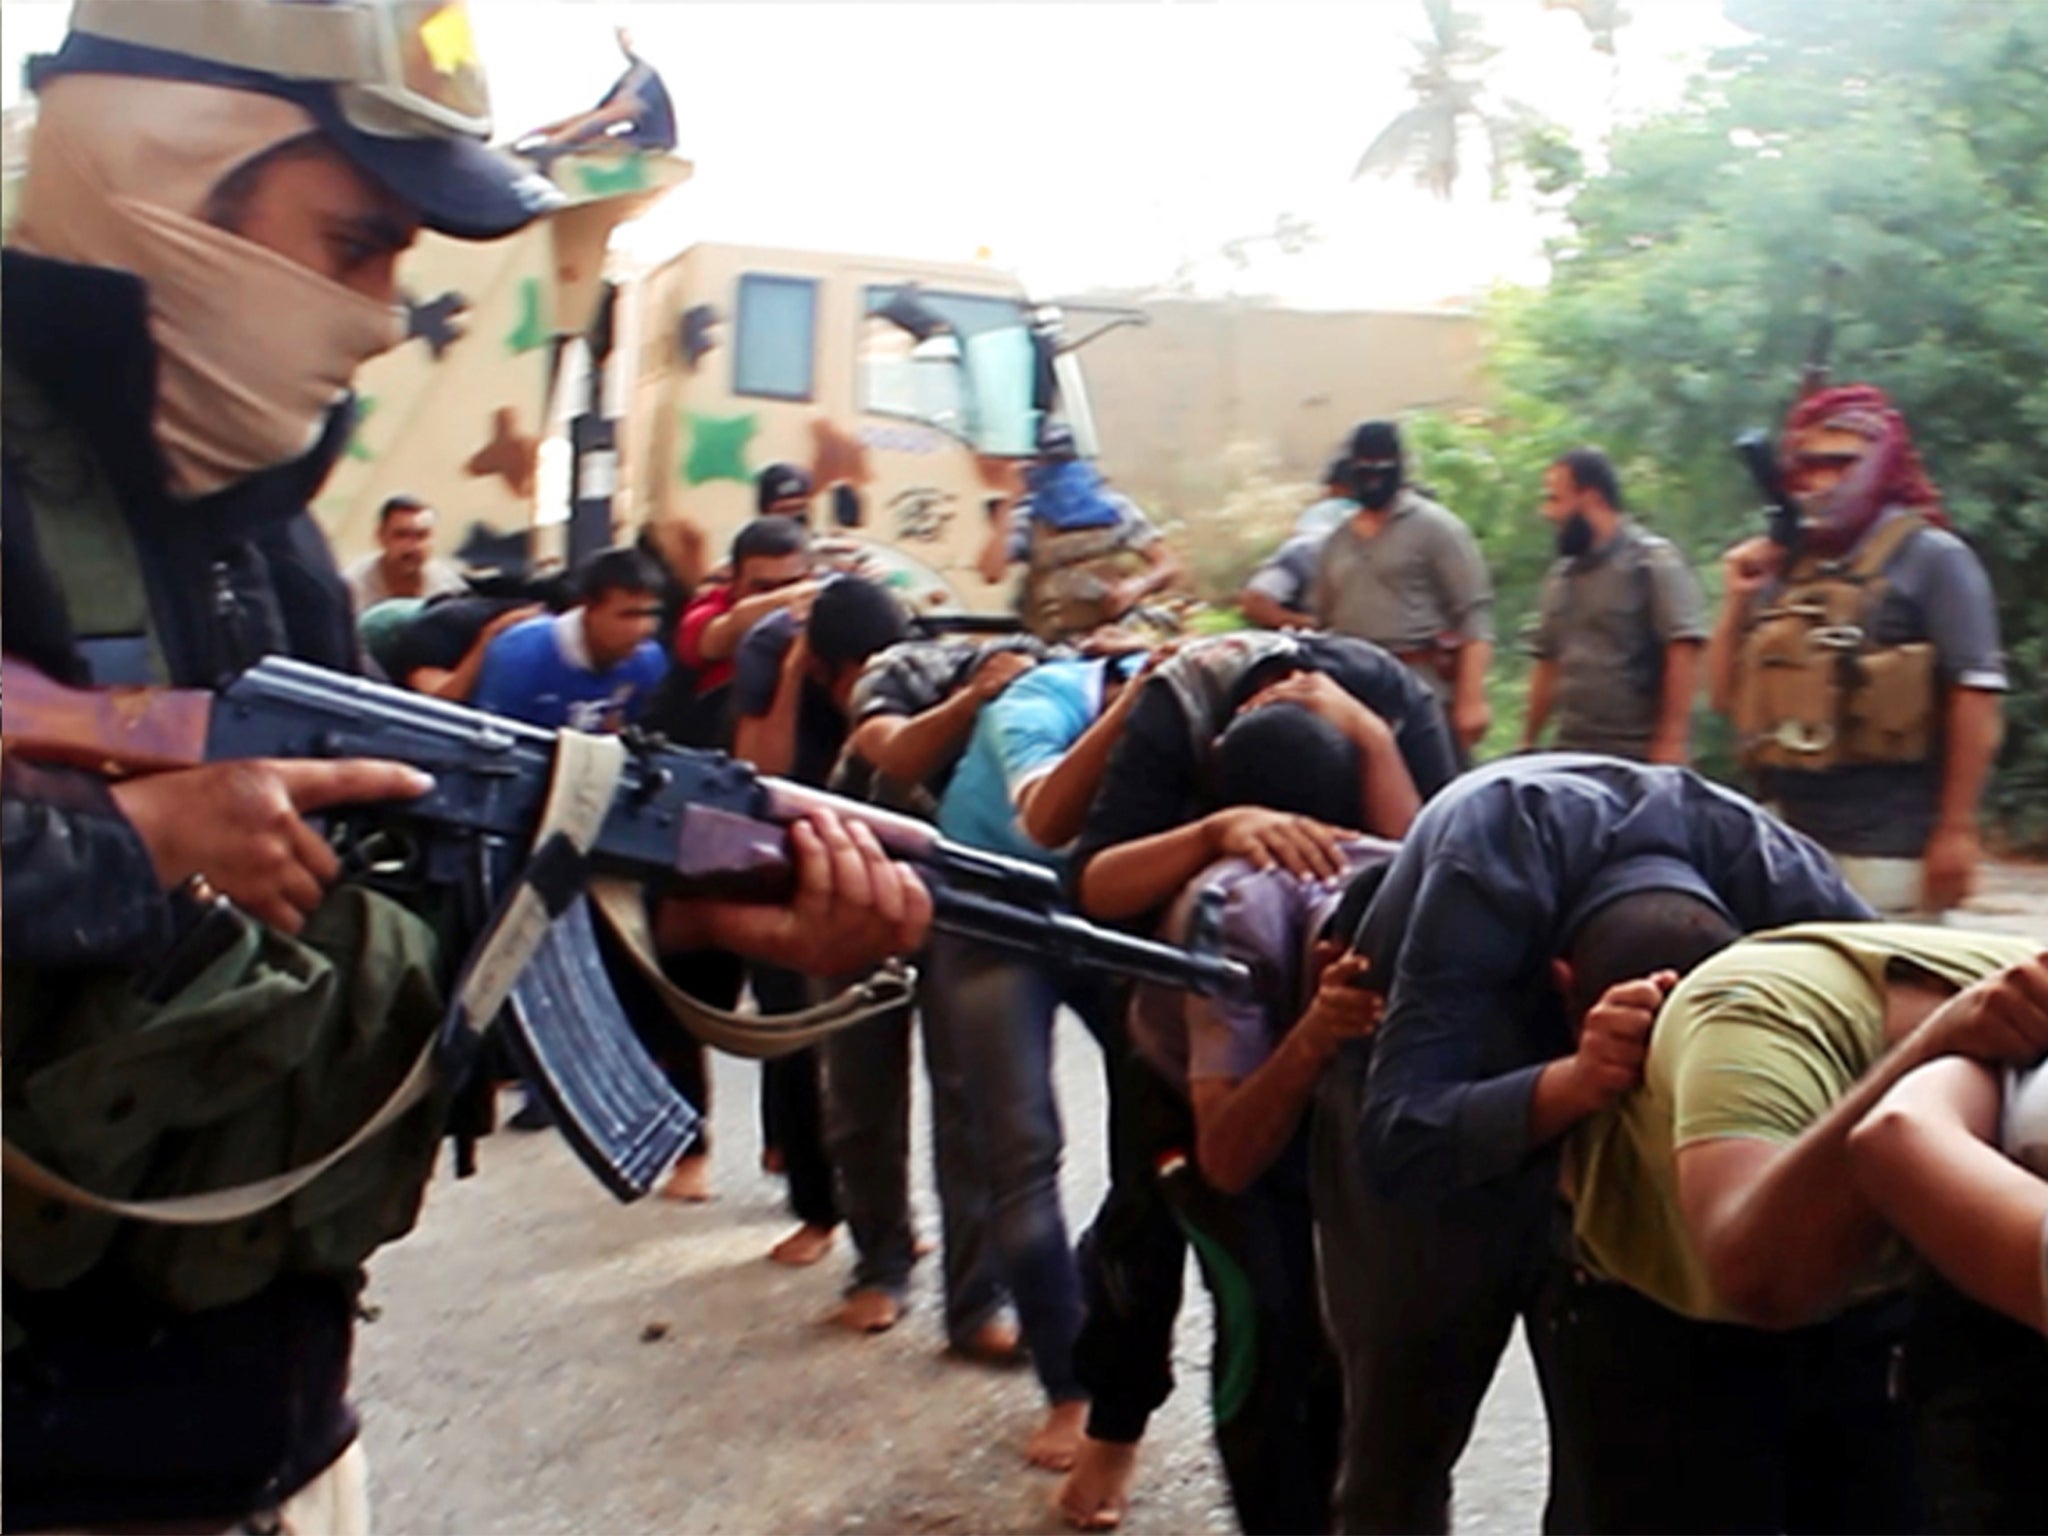 Jihadist militants leading away captured Iraqi soldiers in Tikrit, Iraq, in June